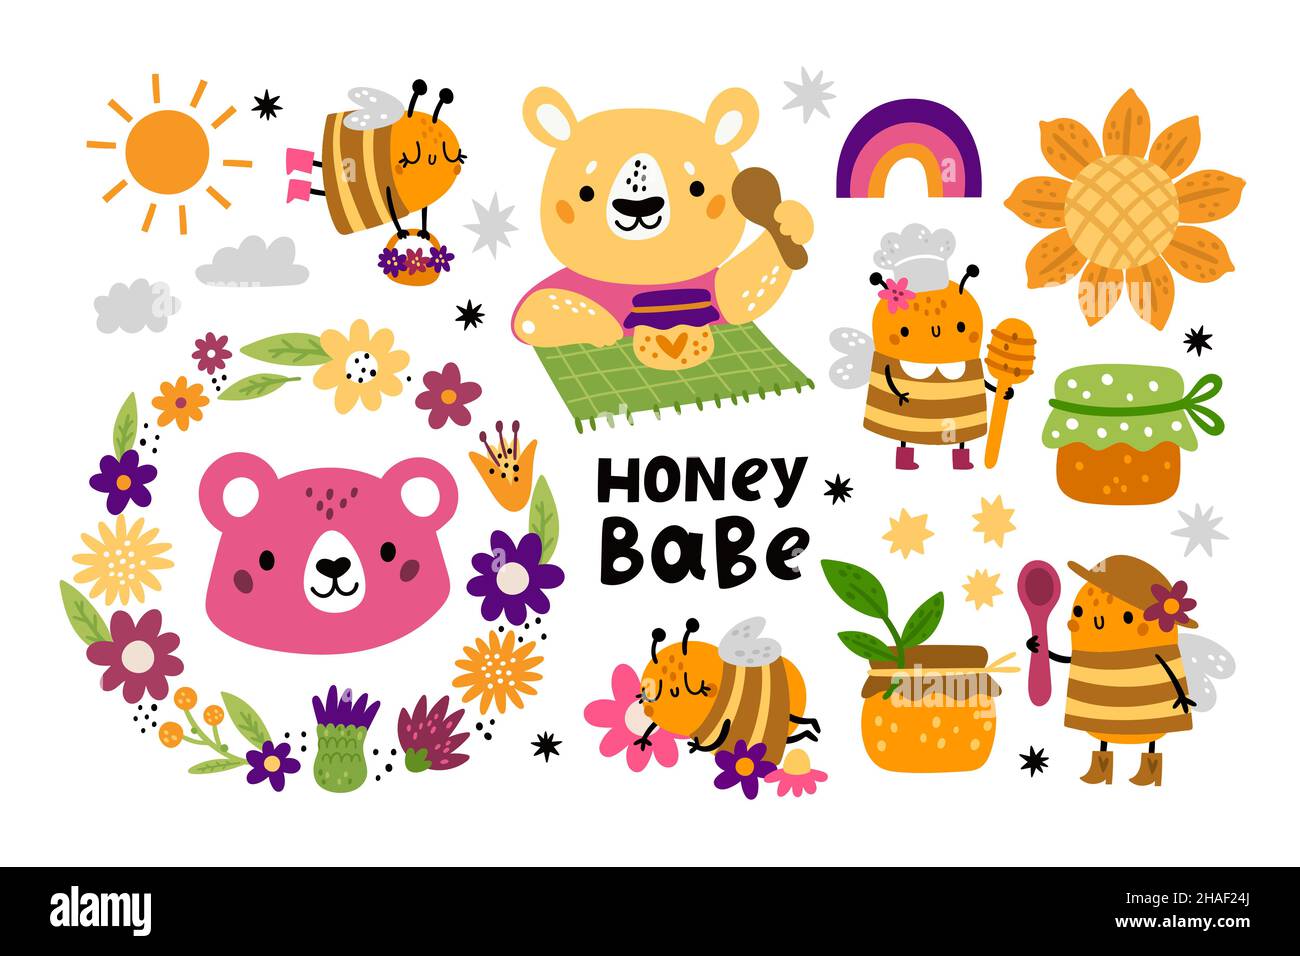 Niedliche Honigbienen. Kinder lustige Charaktere. Cartoon Tiere und Honigbienen. Fliegende Insekten. Bären mit Topf und Löffel. Natürliche süße Produkte. Blumen und Stock Vektor